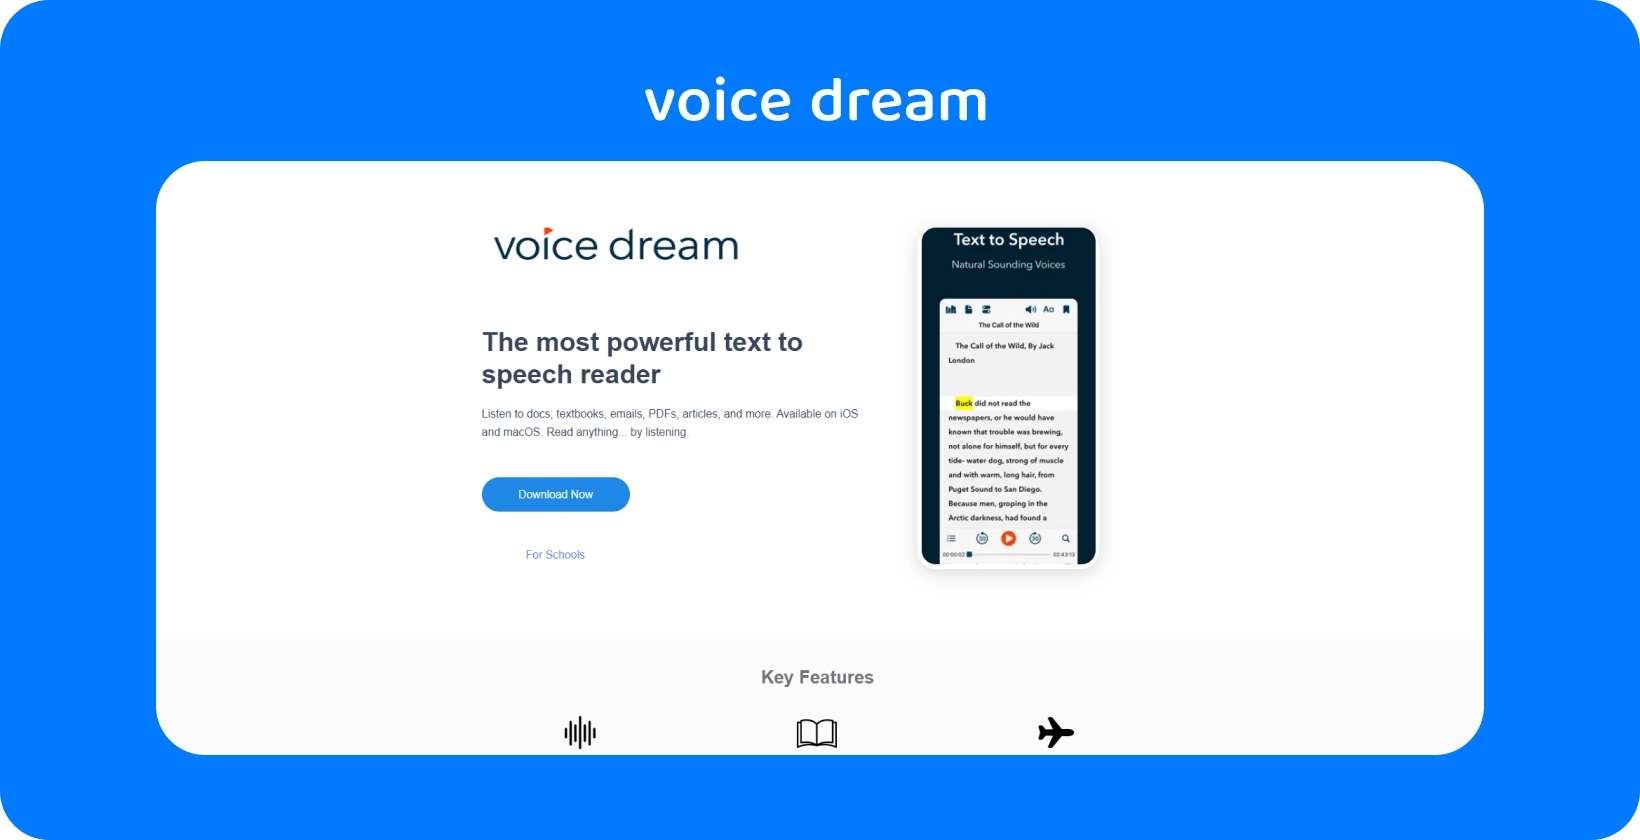 Интерфейс приложения Voice Dream, демонстрирующий мощное средство для преобразования текста в речь для различных документов на мобильных устройствах.